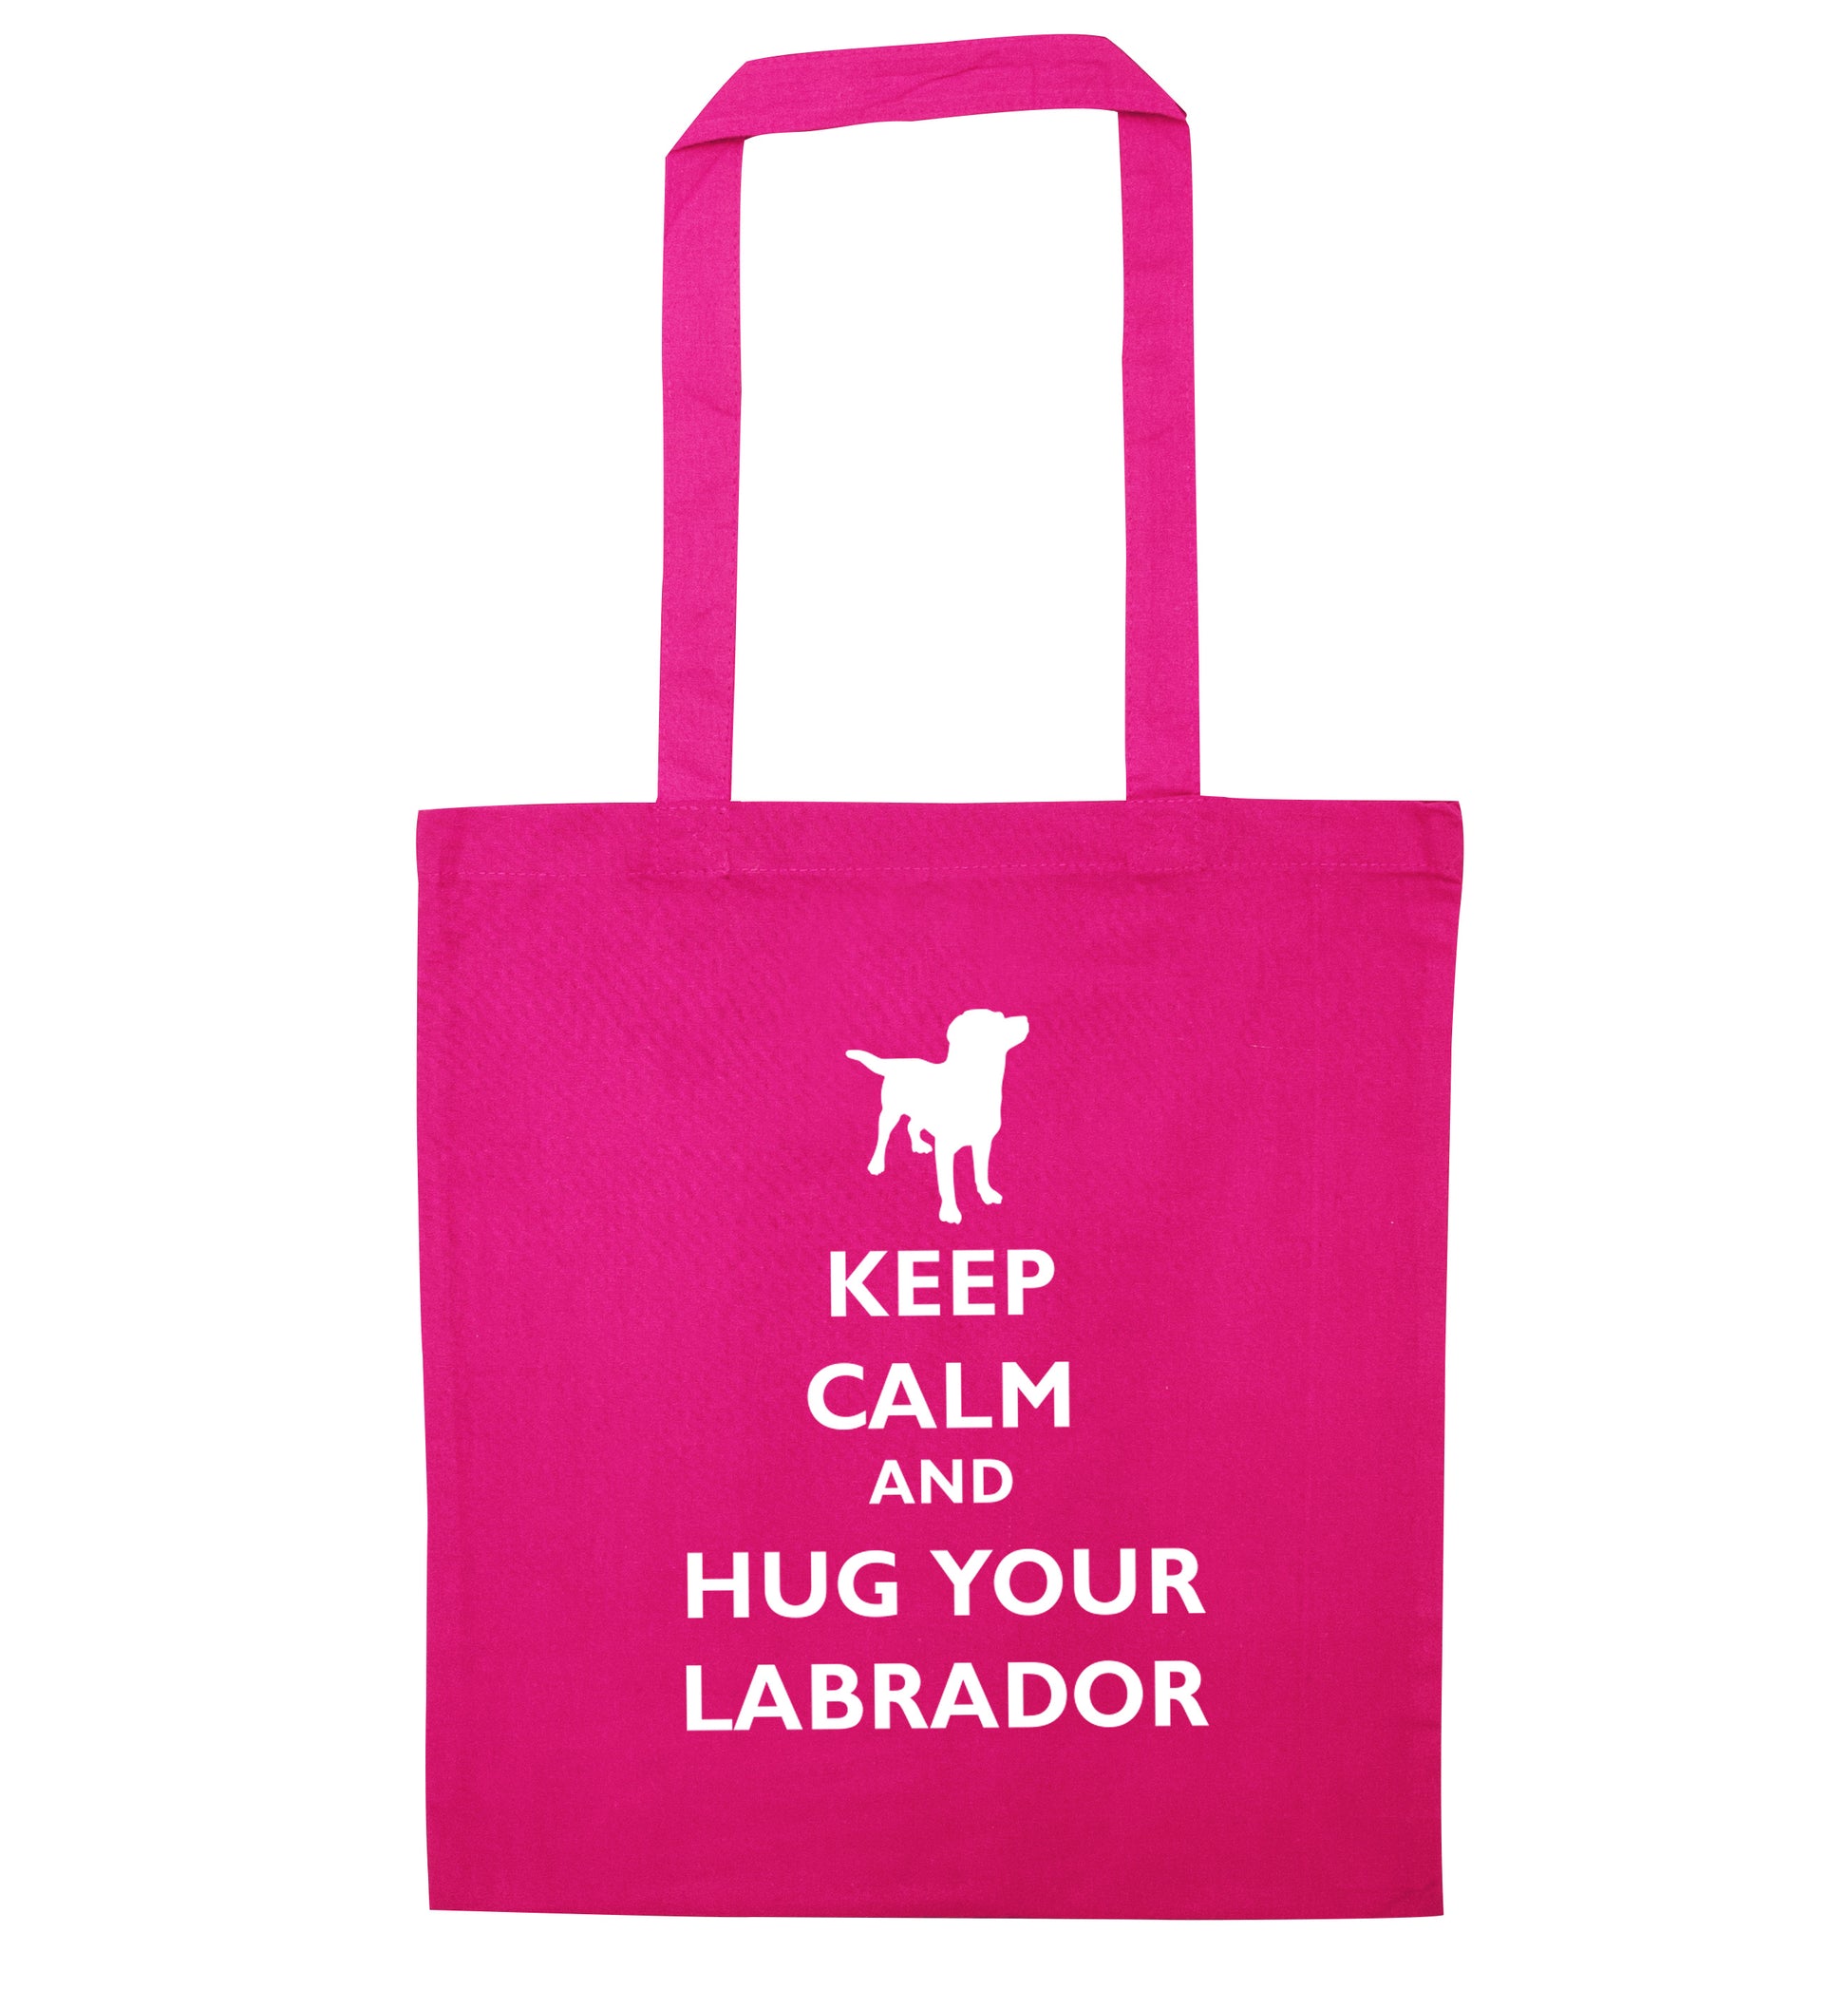 Keep calm and hug your labrador pink tote bag